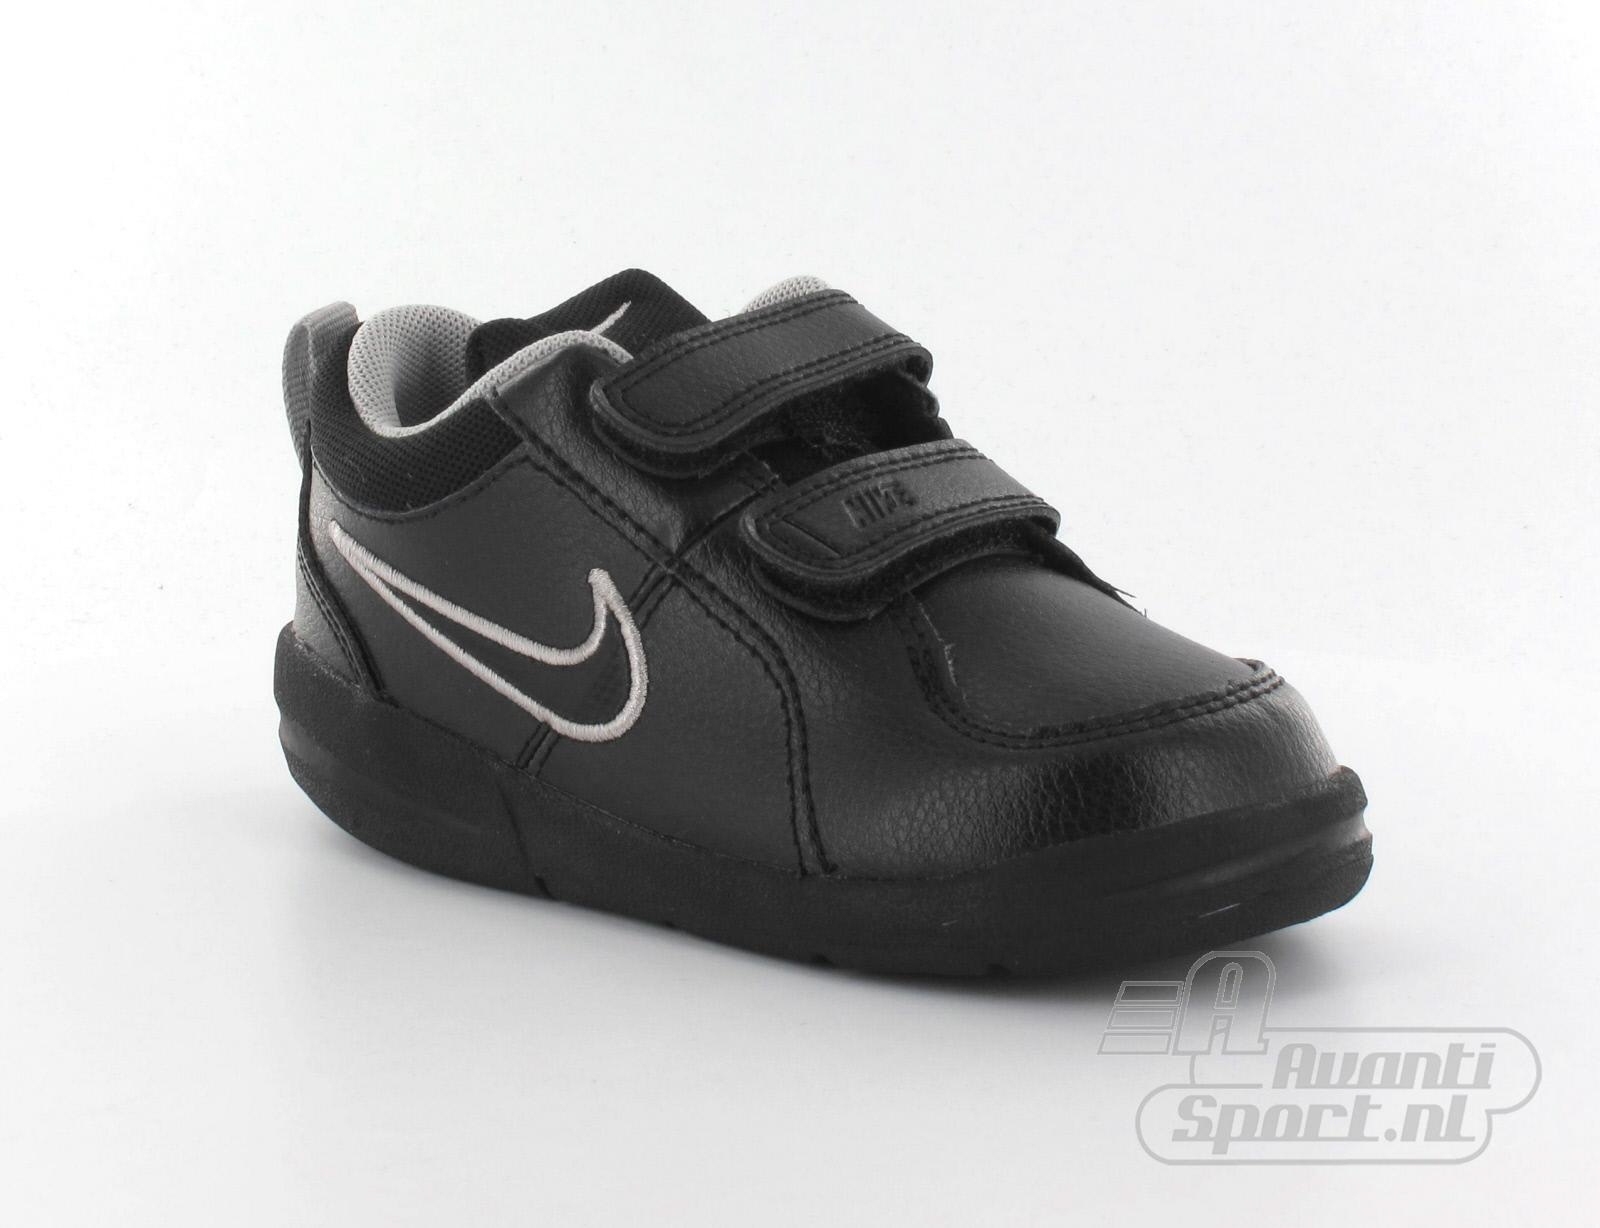 Avantisport - Nike - Pico 4 (Tdv) - Kinderschoen